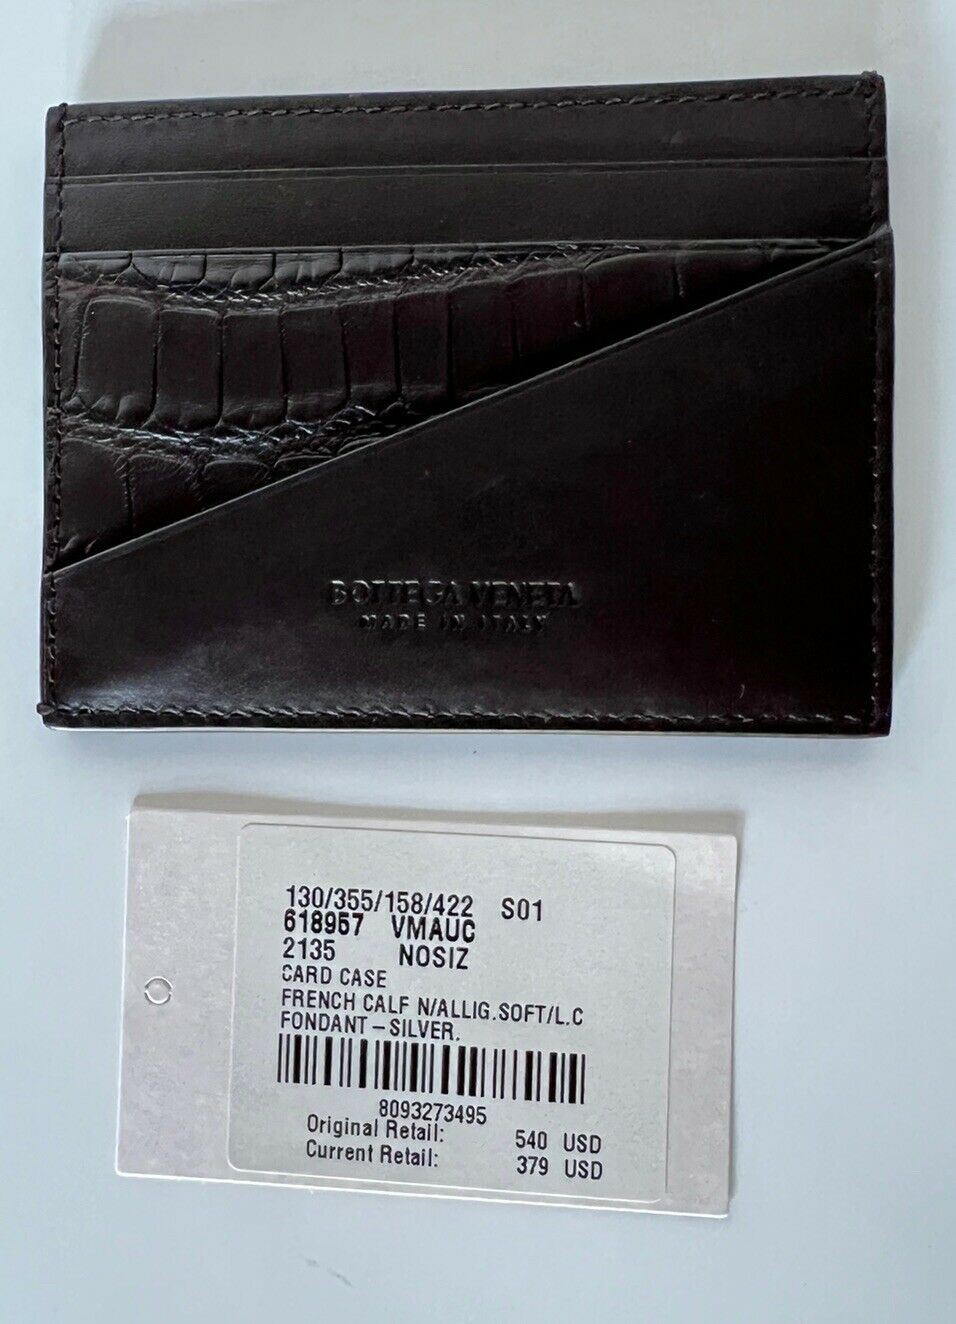 NWT $540 Мужской футляр для карт Bottega Veneta из кожи и кожи аллигатора, черный 618957 Италия